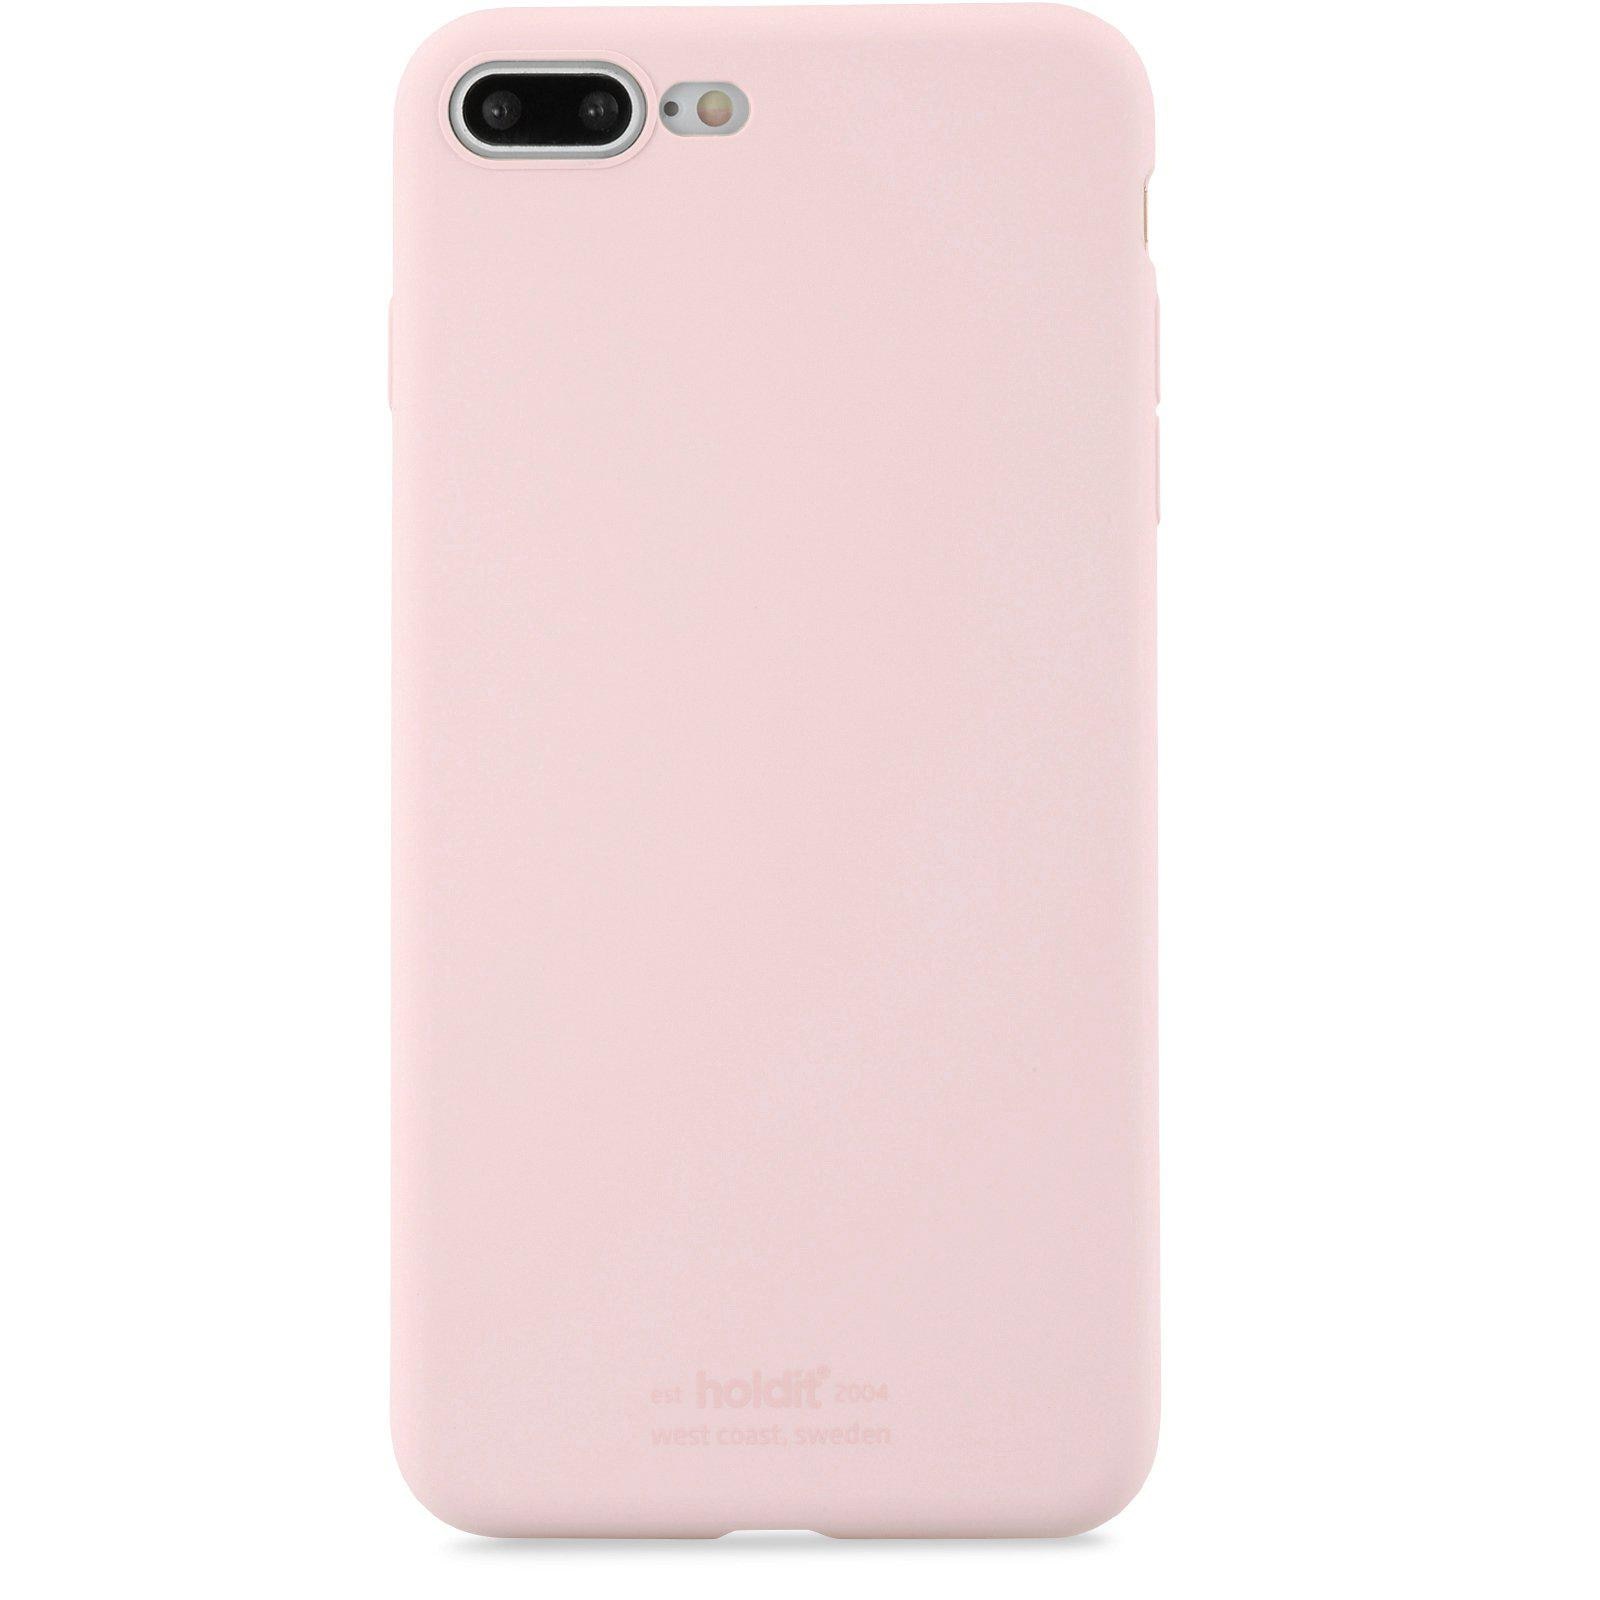 Silikonhülle iPhone 7 Plus/8 Plus Blush Pink